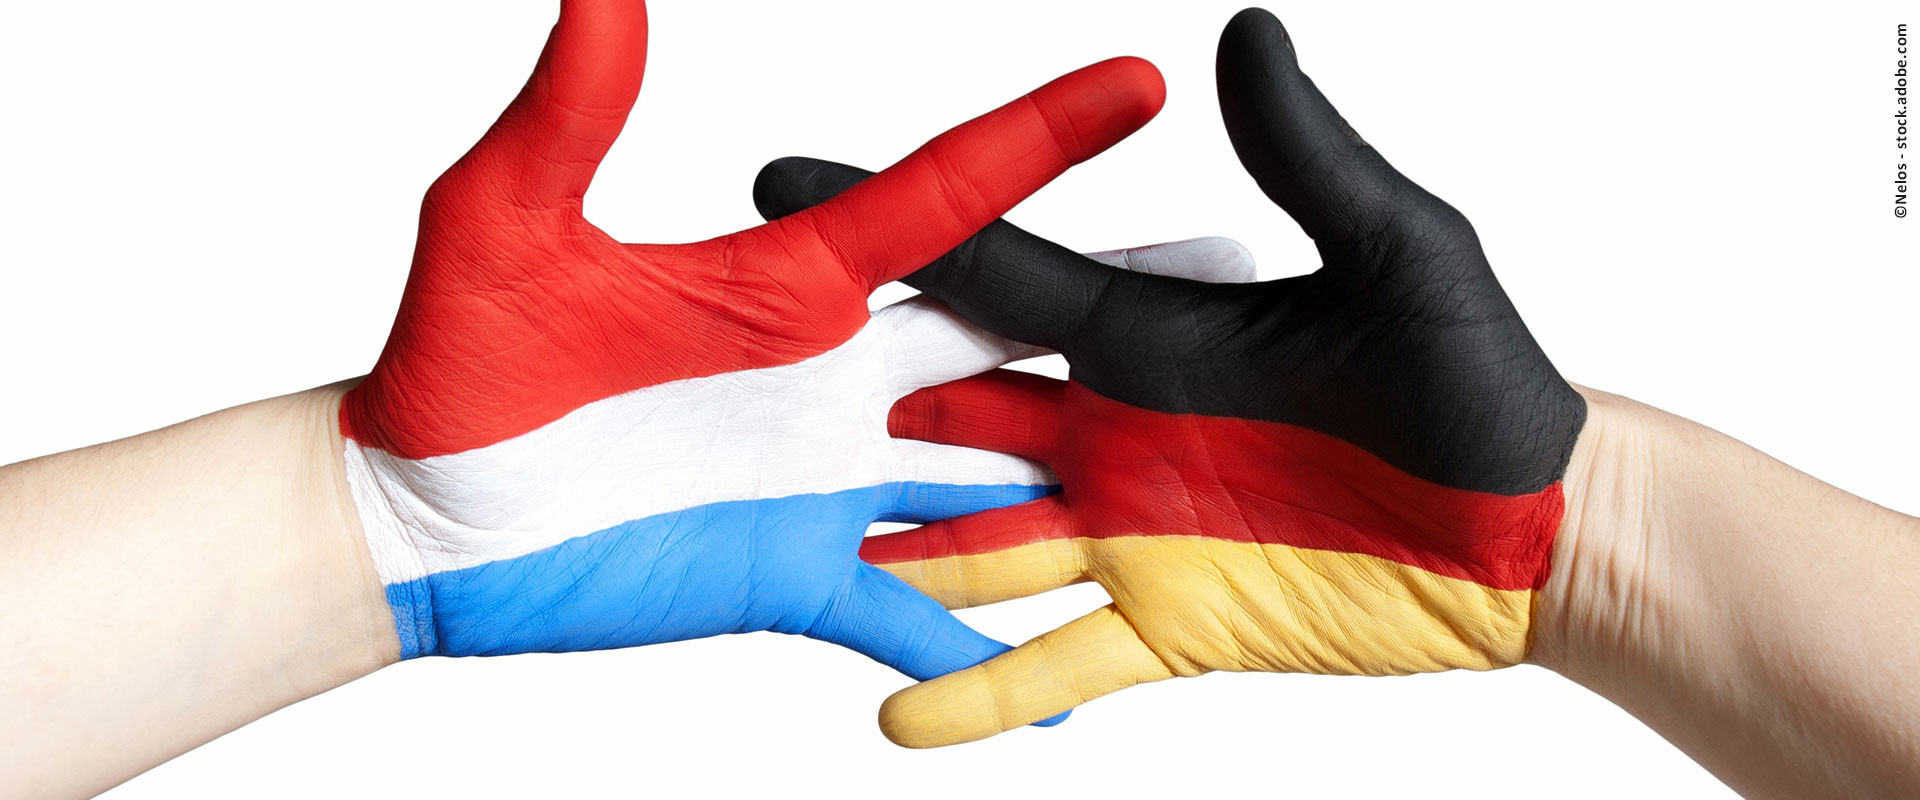 Zwei Hände greifen ineinander, bemalt mit den Nationalfarben der Niederlande und von Deutschland